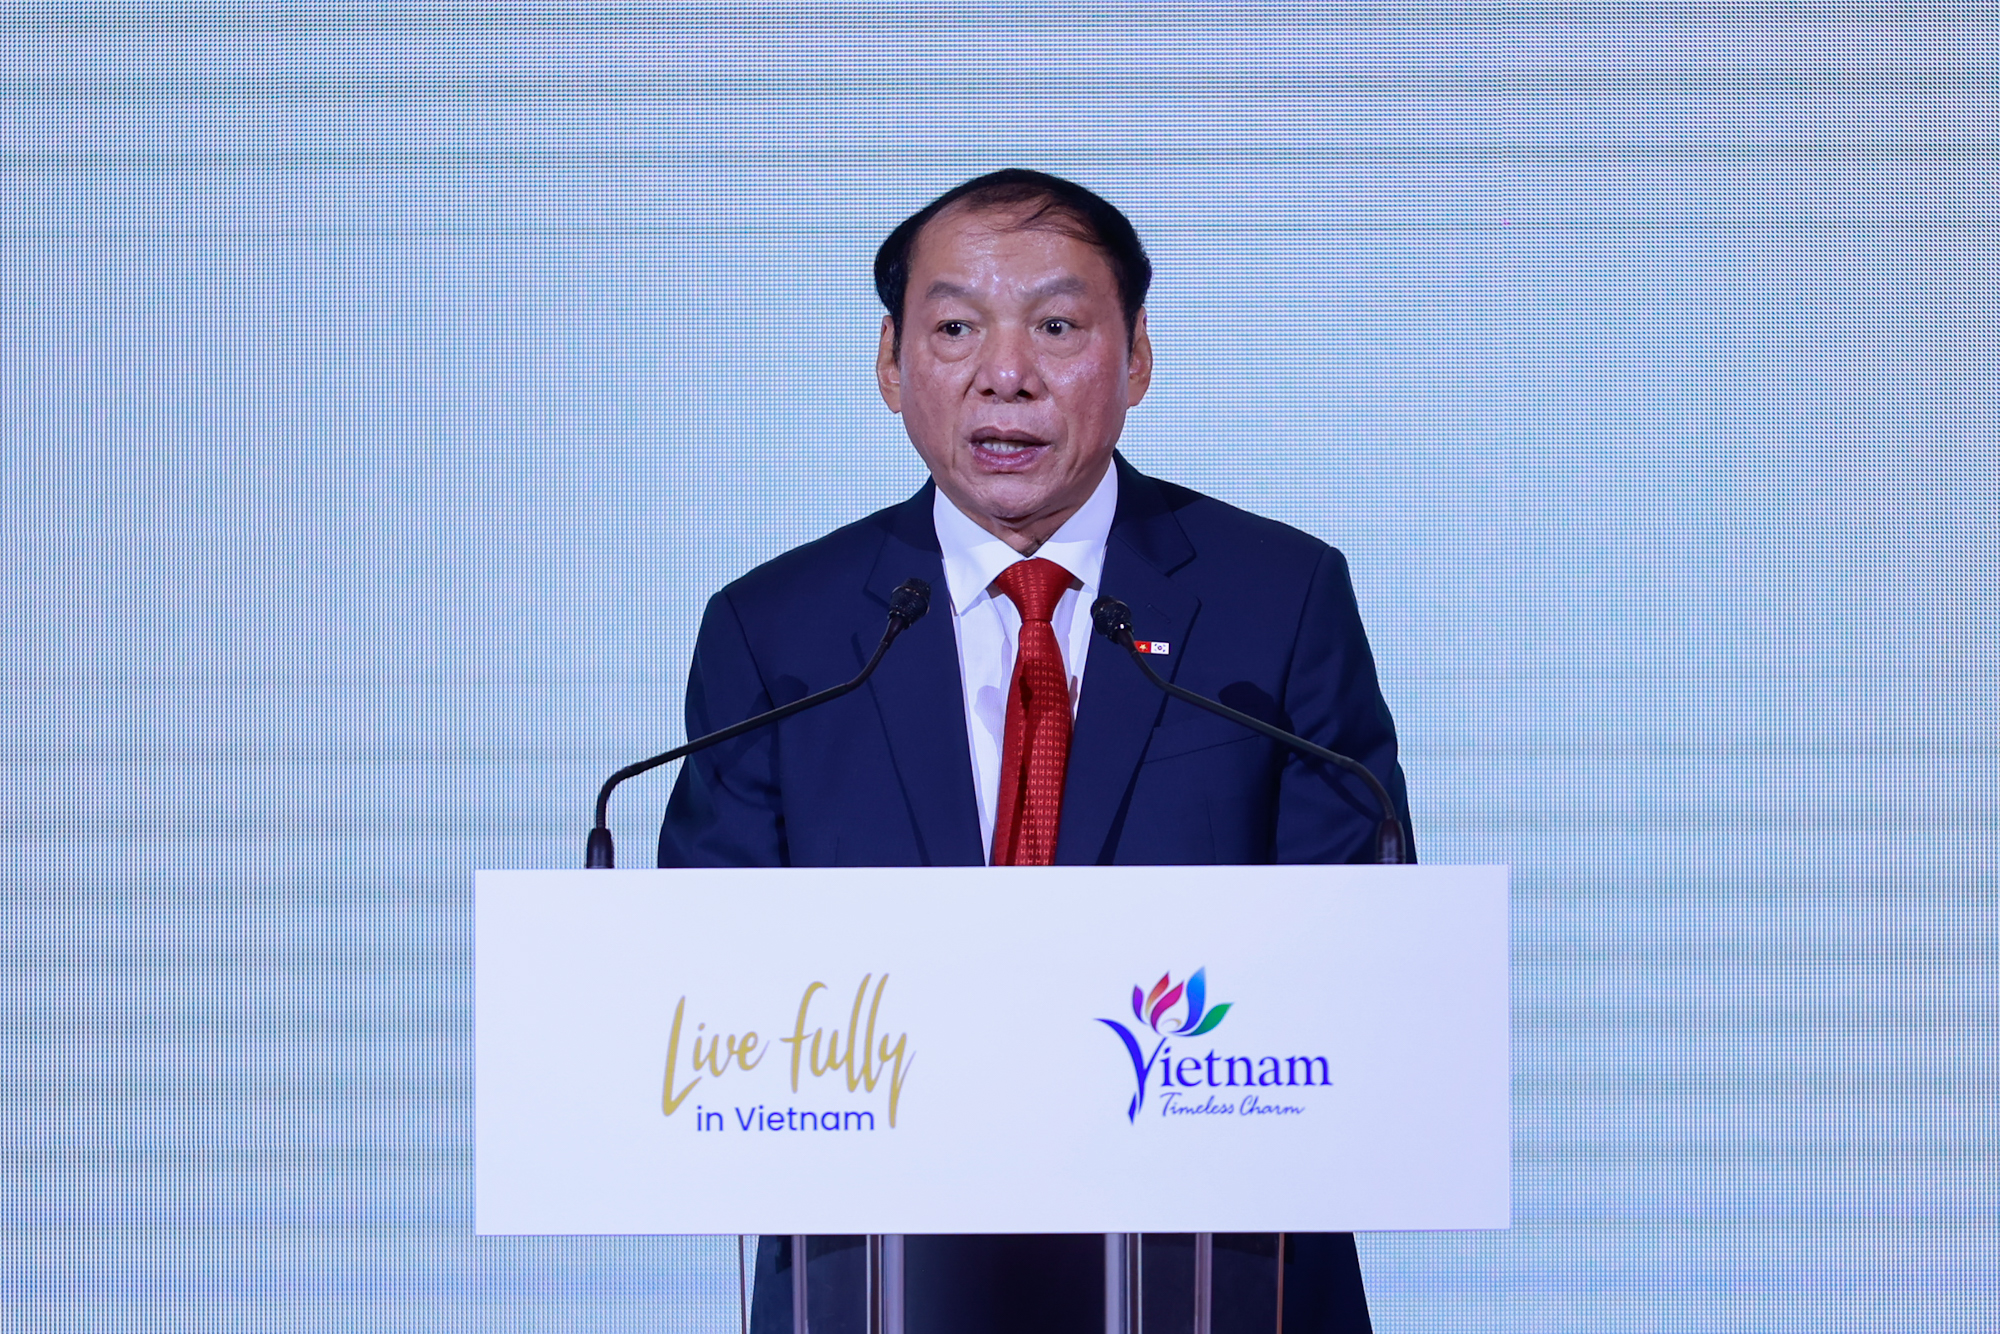 Bộ trưởng Bộ Văn hóa, Thể thao và Du lịch Nguyễn Văn Hùng phát biểu tại Diễn đàn - Ảnh: VGP/Nhật Bắc